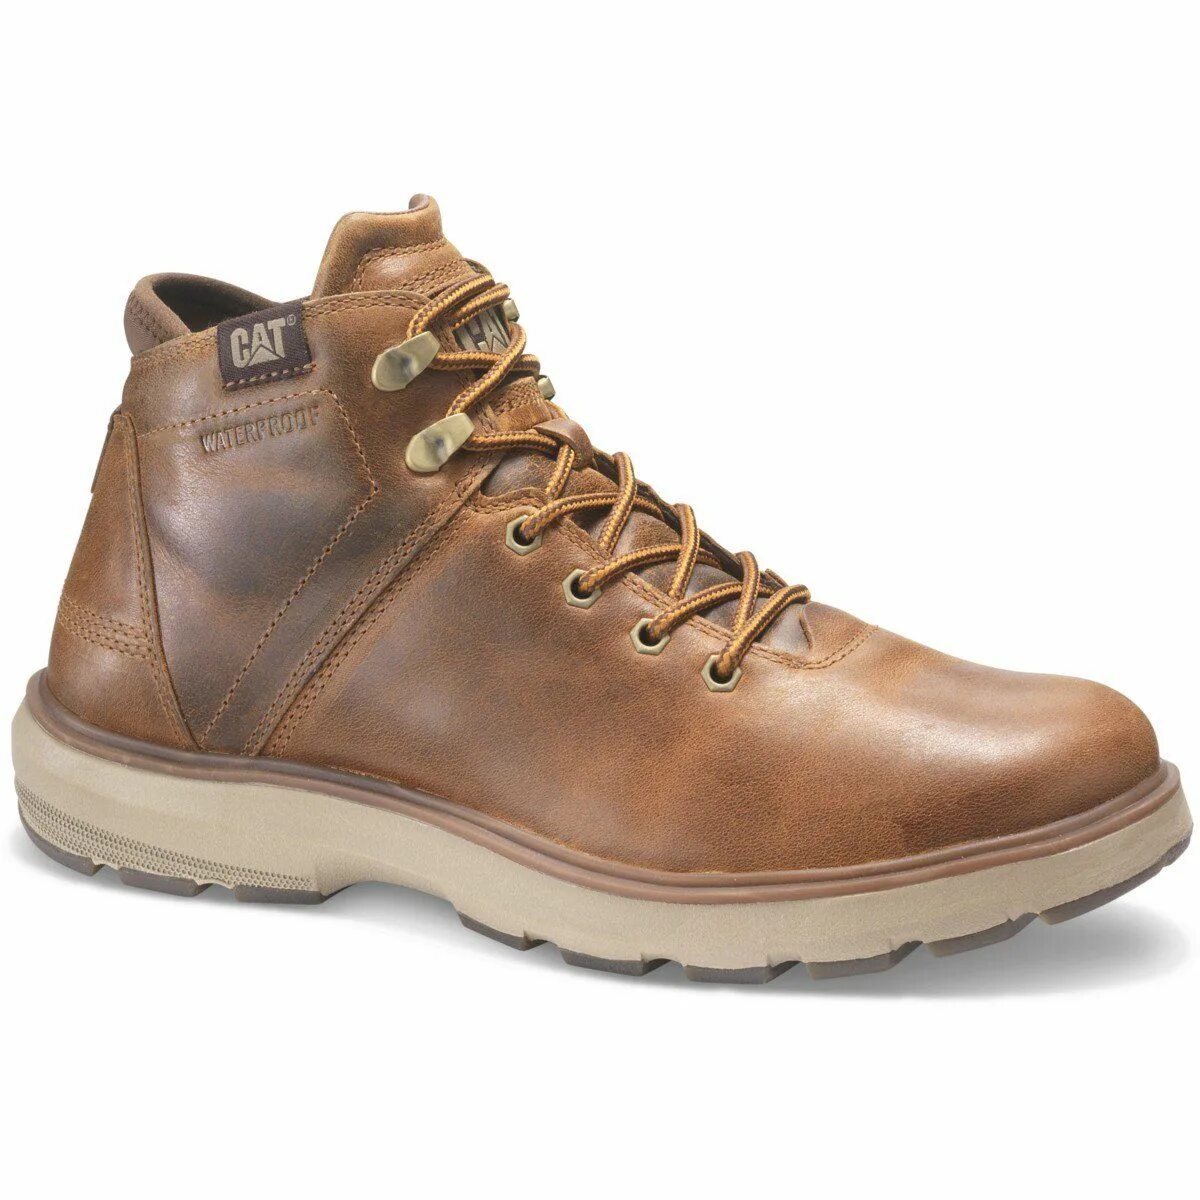 Ботинки Caterpillar founder TX men's Boots p718051. Caterpillar ease ботинки мужские. Катерпиллер обувь мужская ботинки Cat. Ботинки мужские Cat p724056. Ботинки caterpillar мужские купить